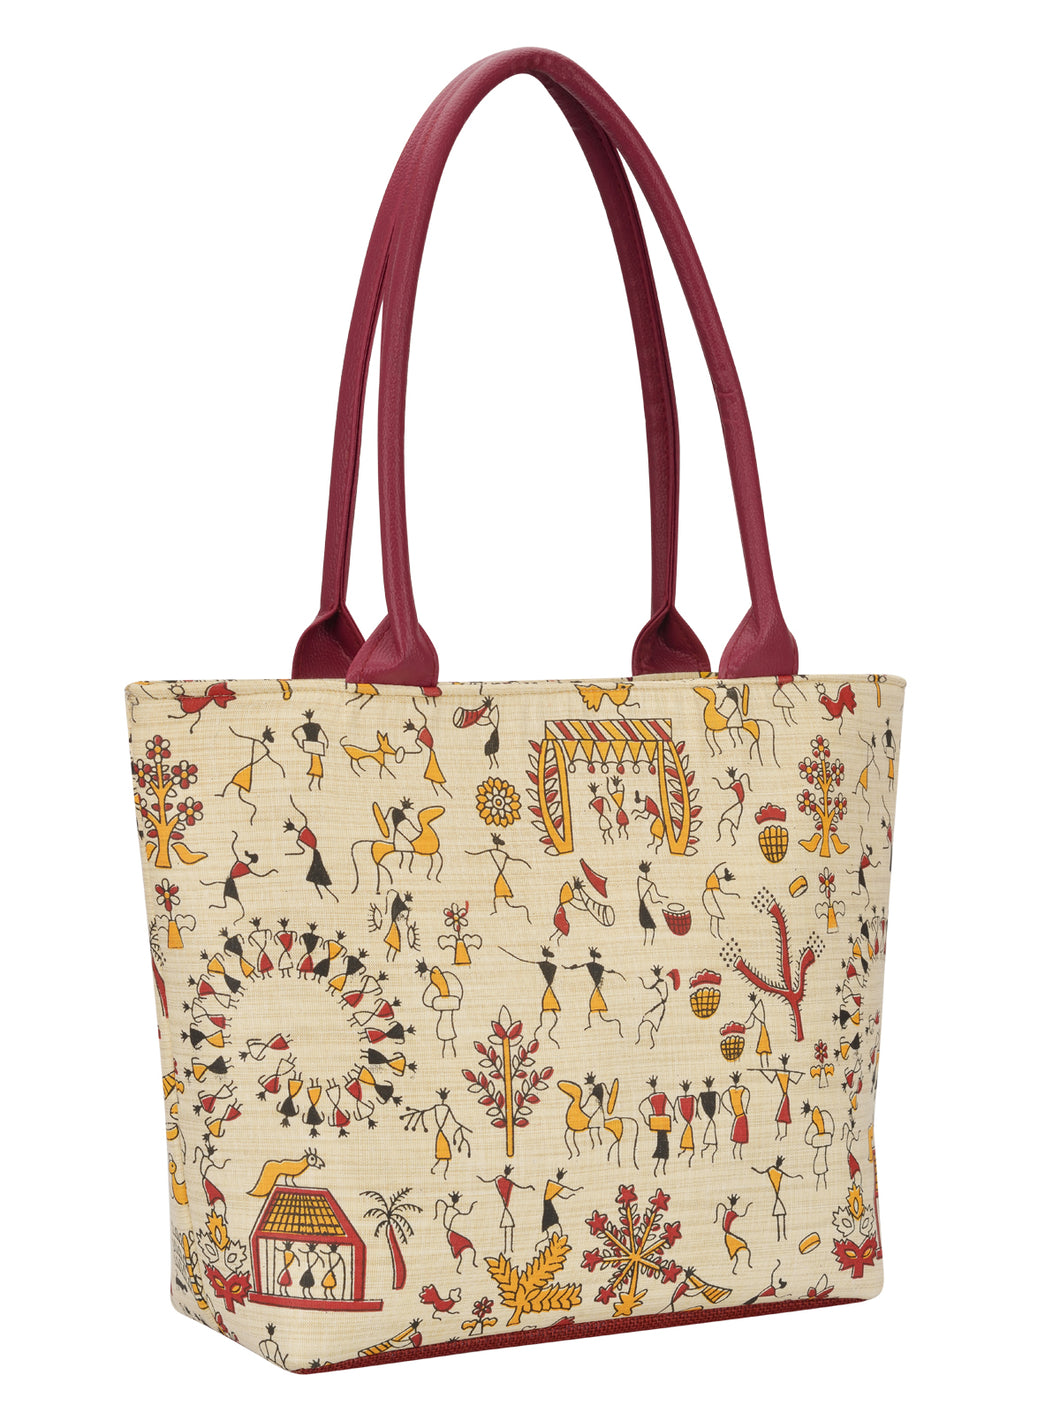 Cath Kidston Bags & Handbags for Women for sale | eBay